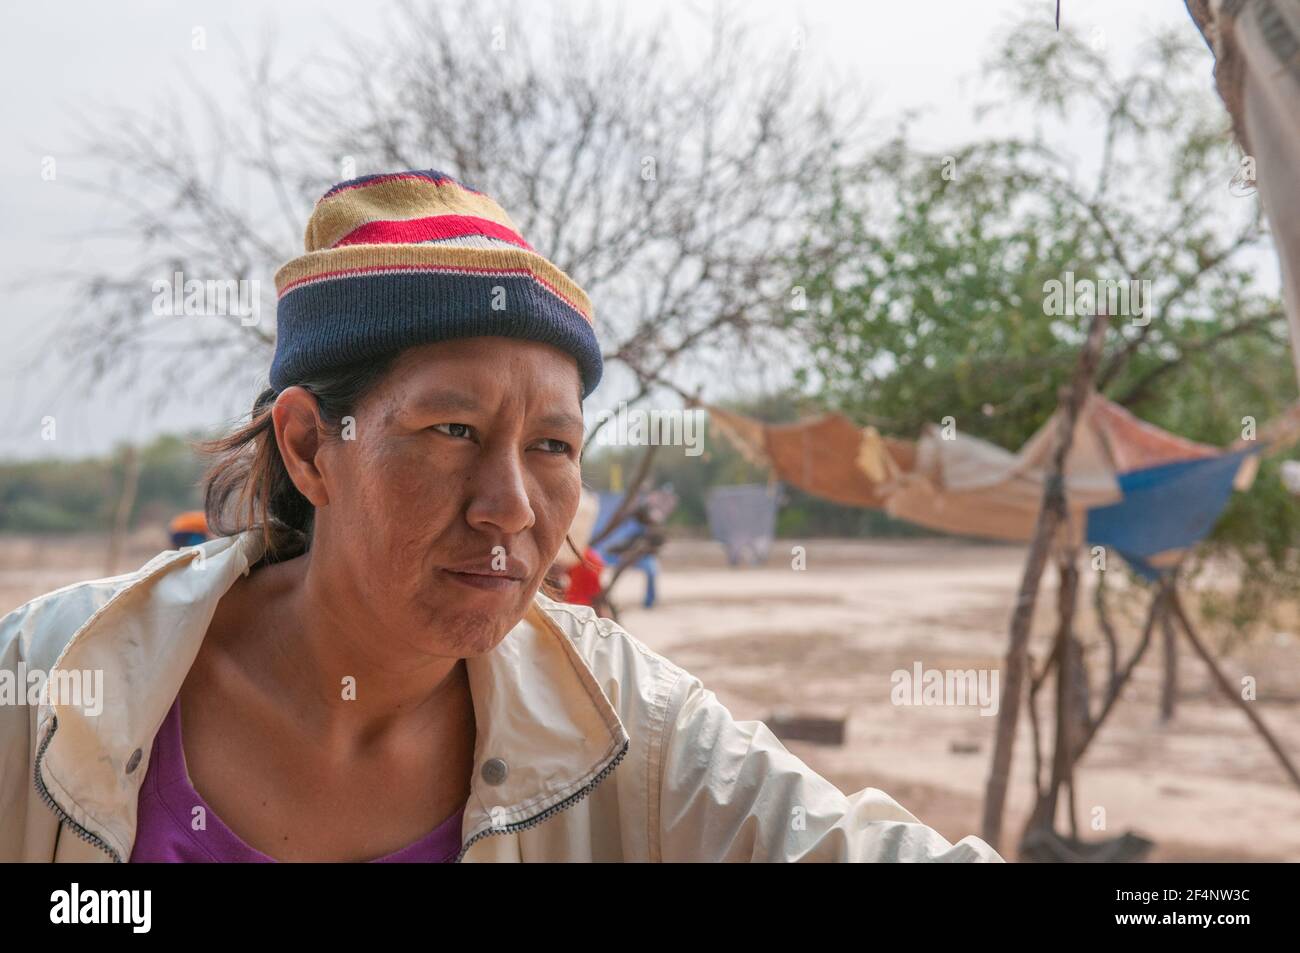 Provincia di Chaco. Argentino. 15-01-2019. Ritratto di una donna indigena nel suo villaggio nella provincia di Chaco, a nord dell'Argentina. Foto Stock